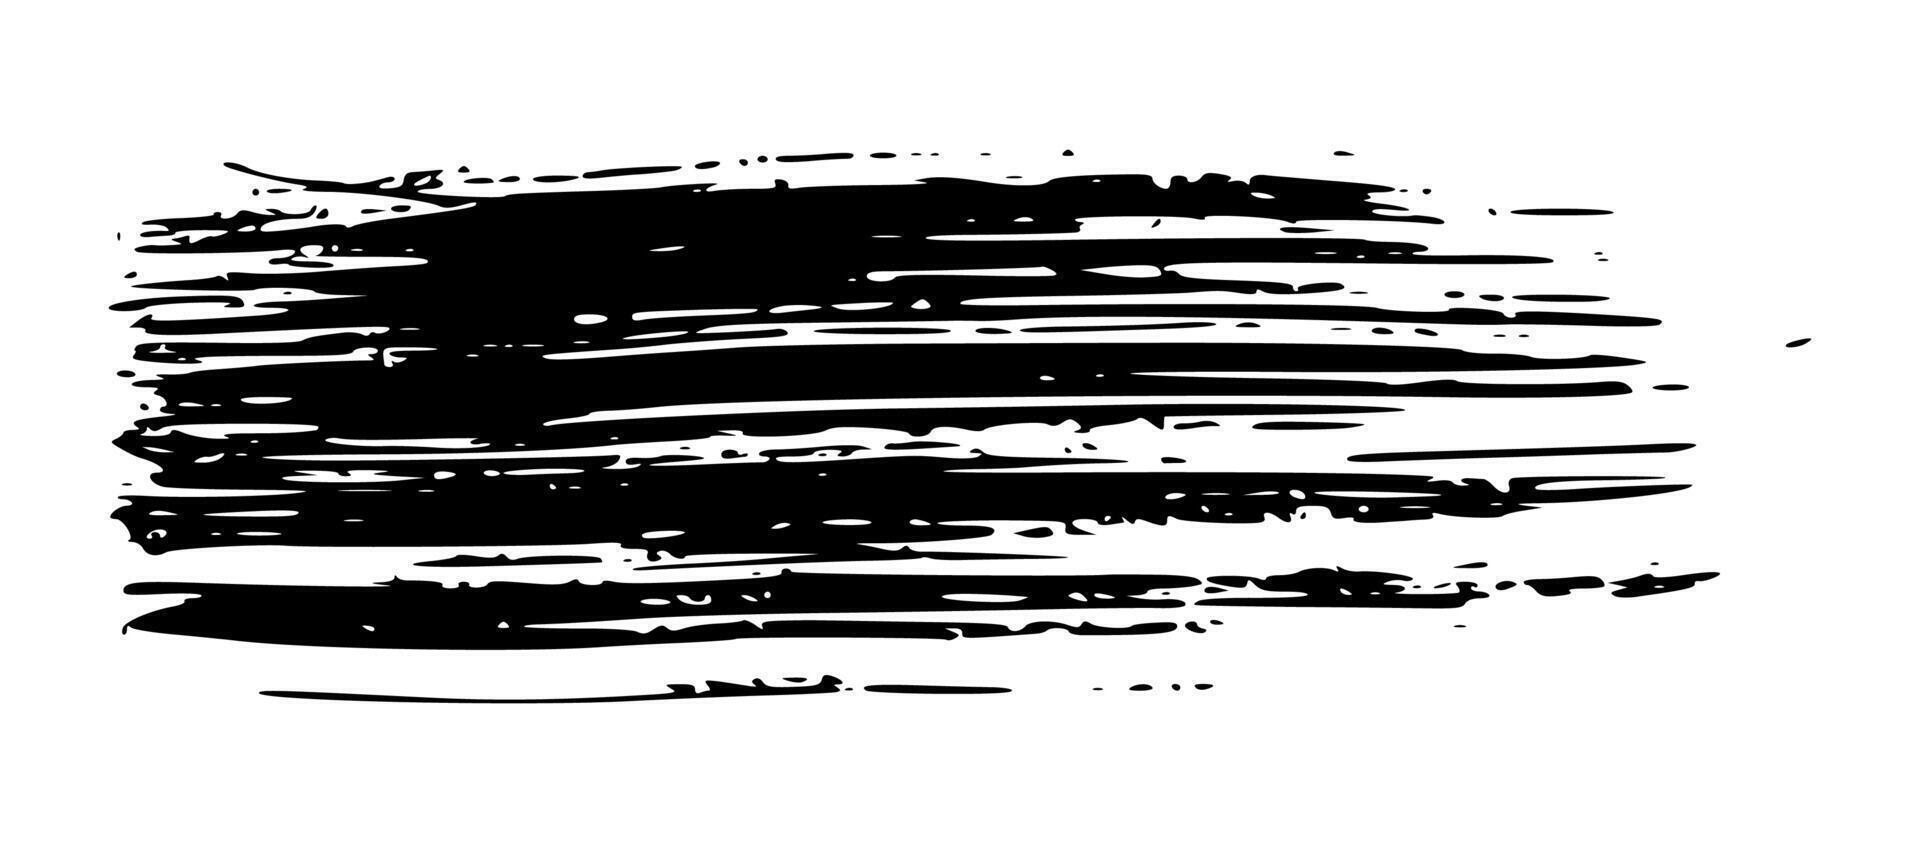 Black brush stroke on white background vector